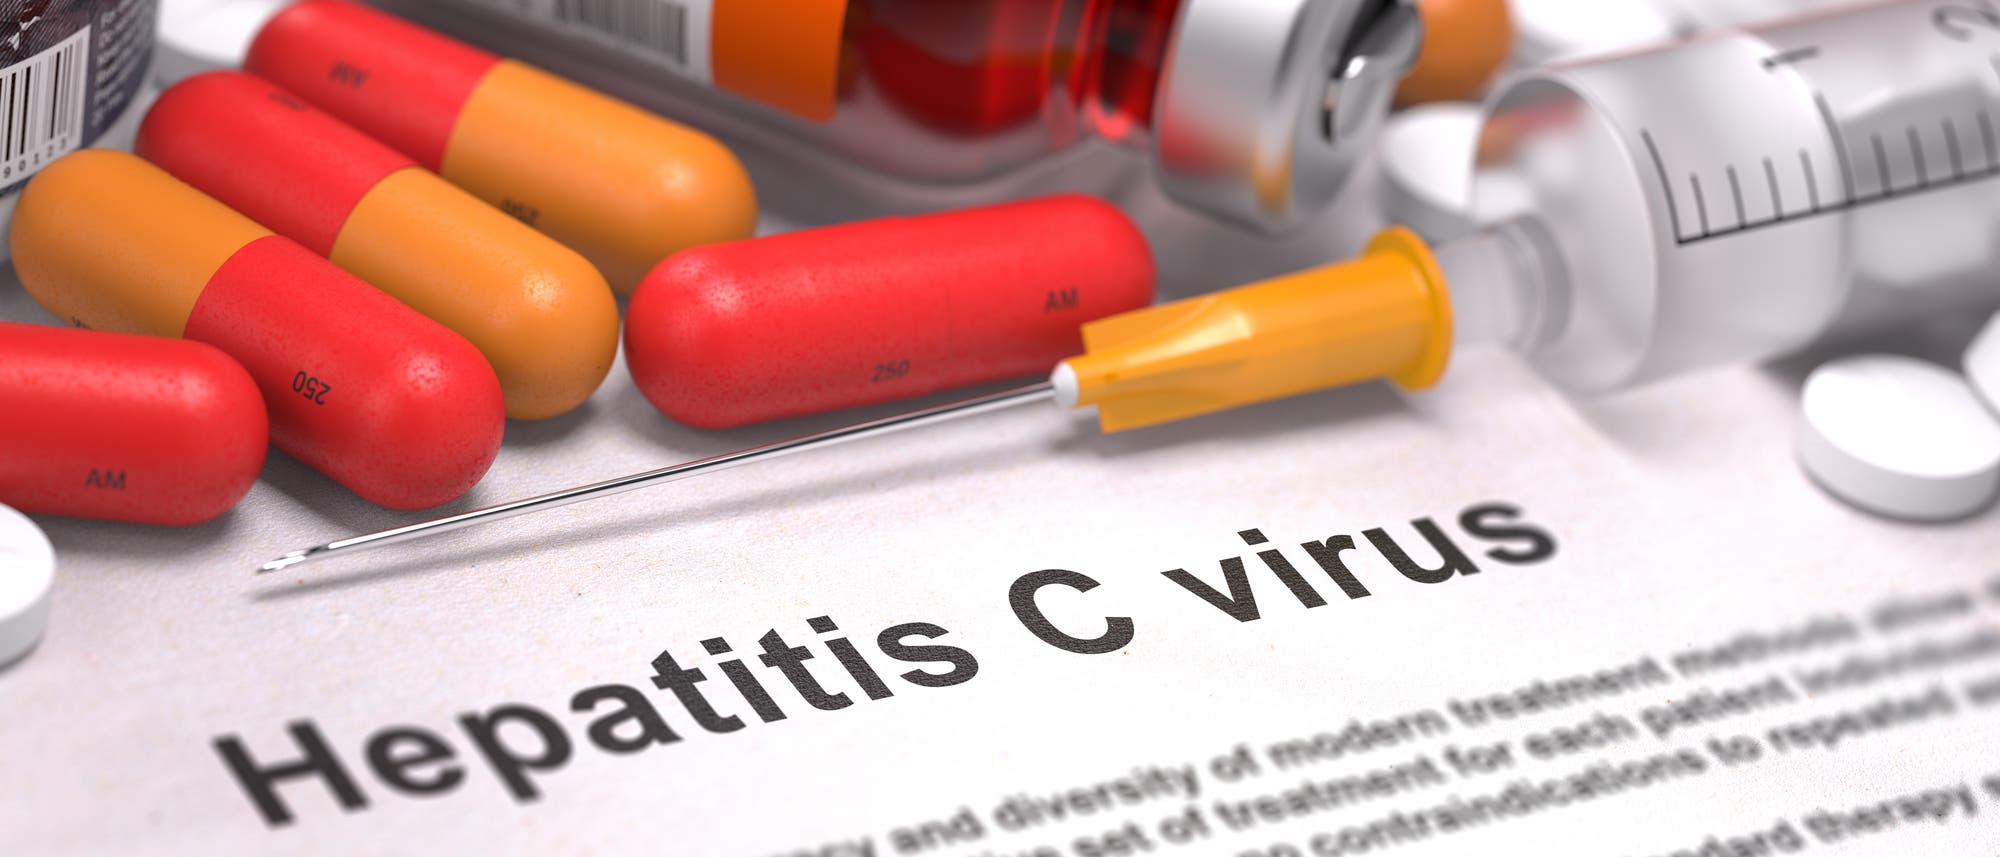 Symbolbild mit Tabletten und Spritzen und einem Zettel, auf dem "Hepatitis C Virus" steht.